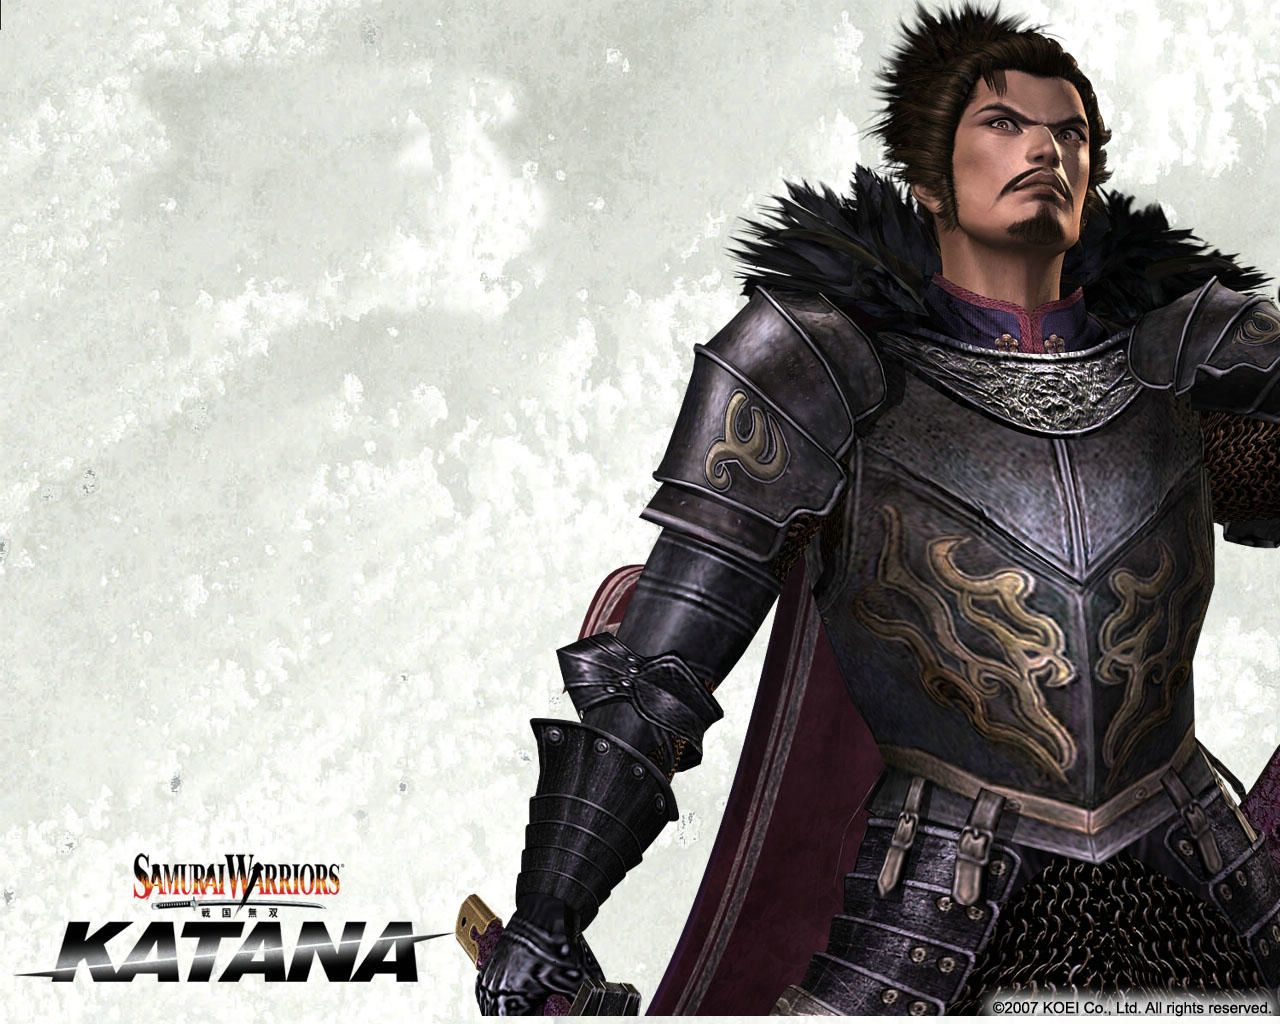 carte (http://www.fond-ecran.net/fonds/samuraiwarriors_004.jpg)